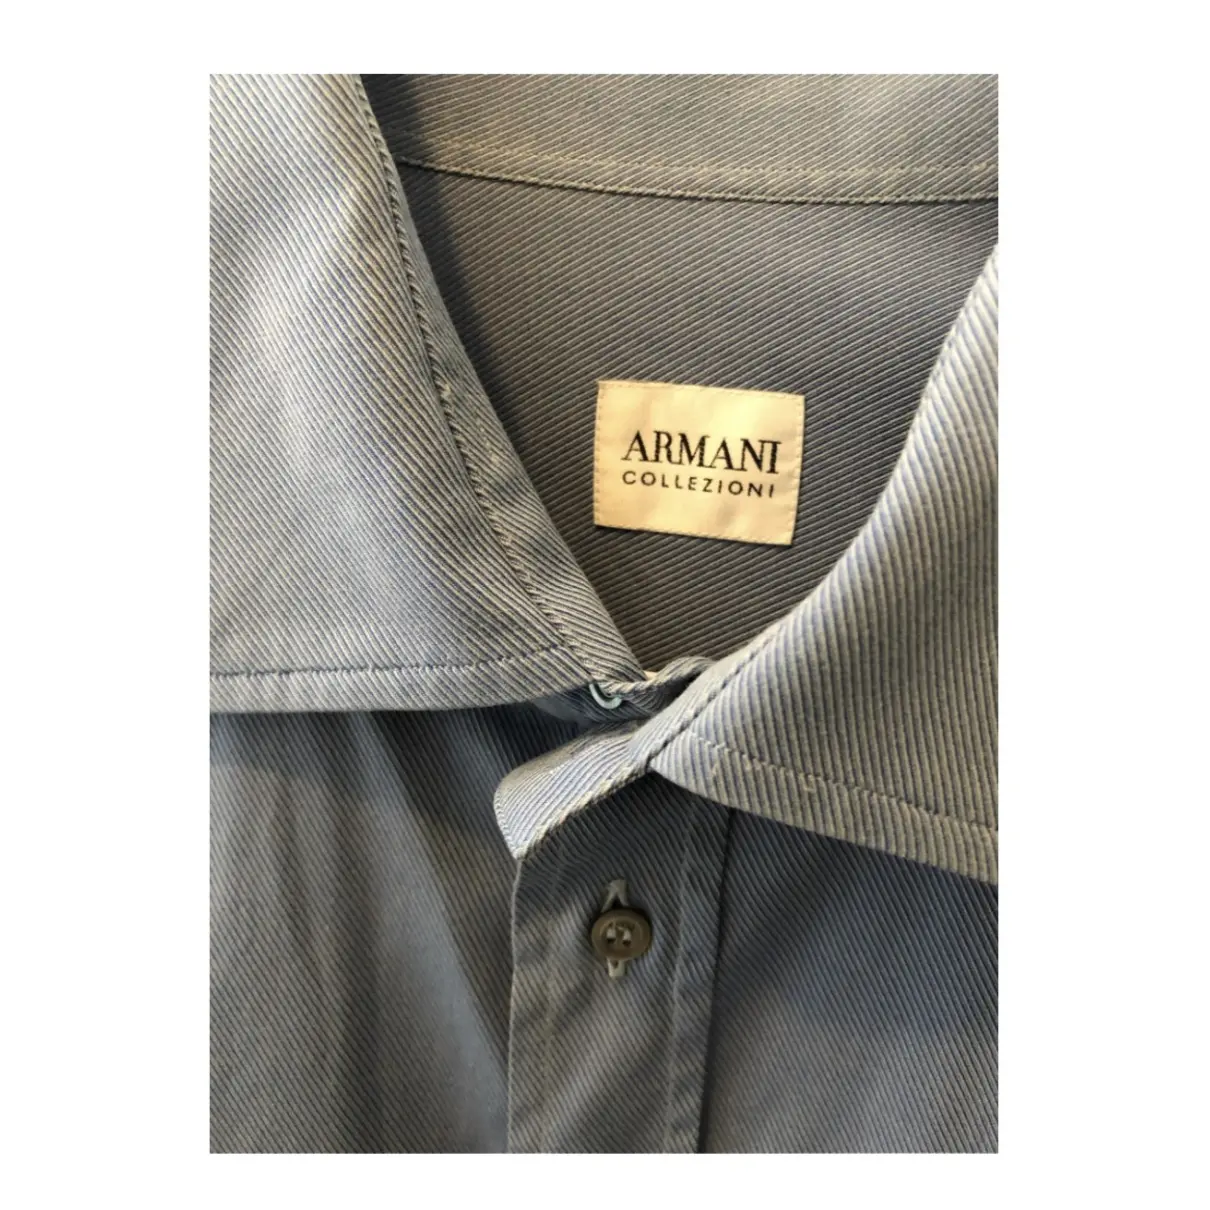 Armani Collezioni Shirt for sale